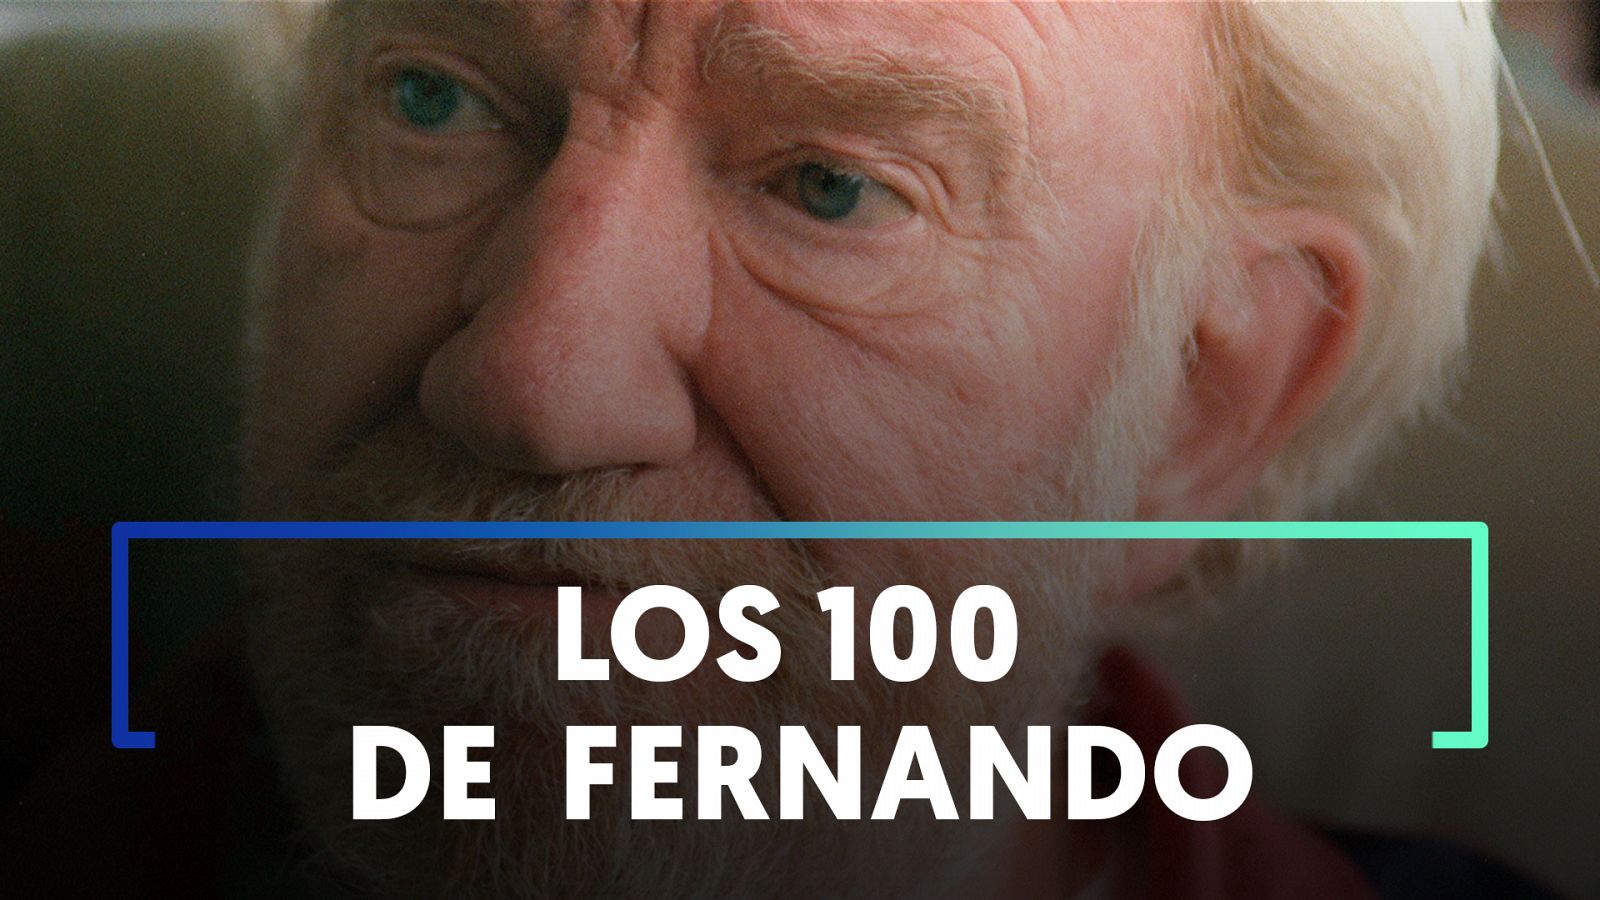 Se cumplen 100 AÑOS del nacimiento de Fernando Fernán Gómez